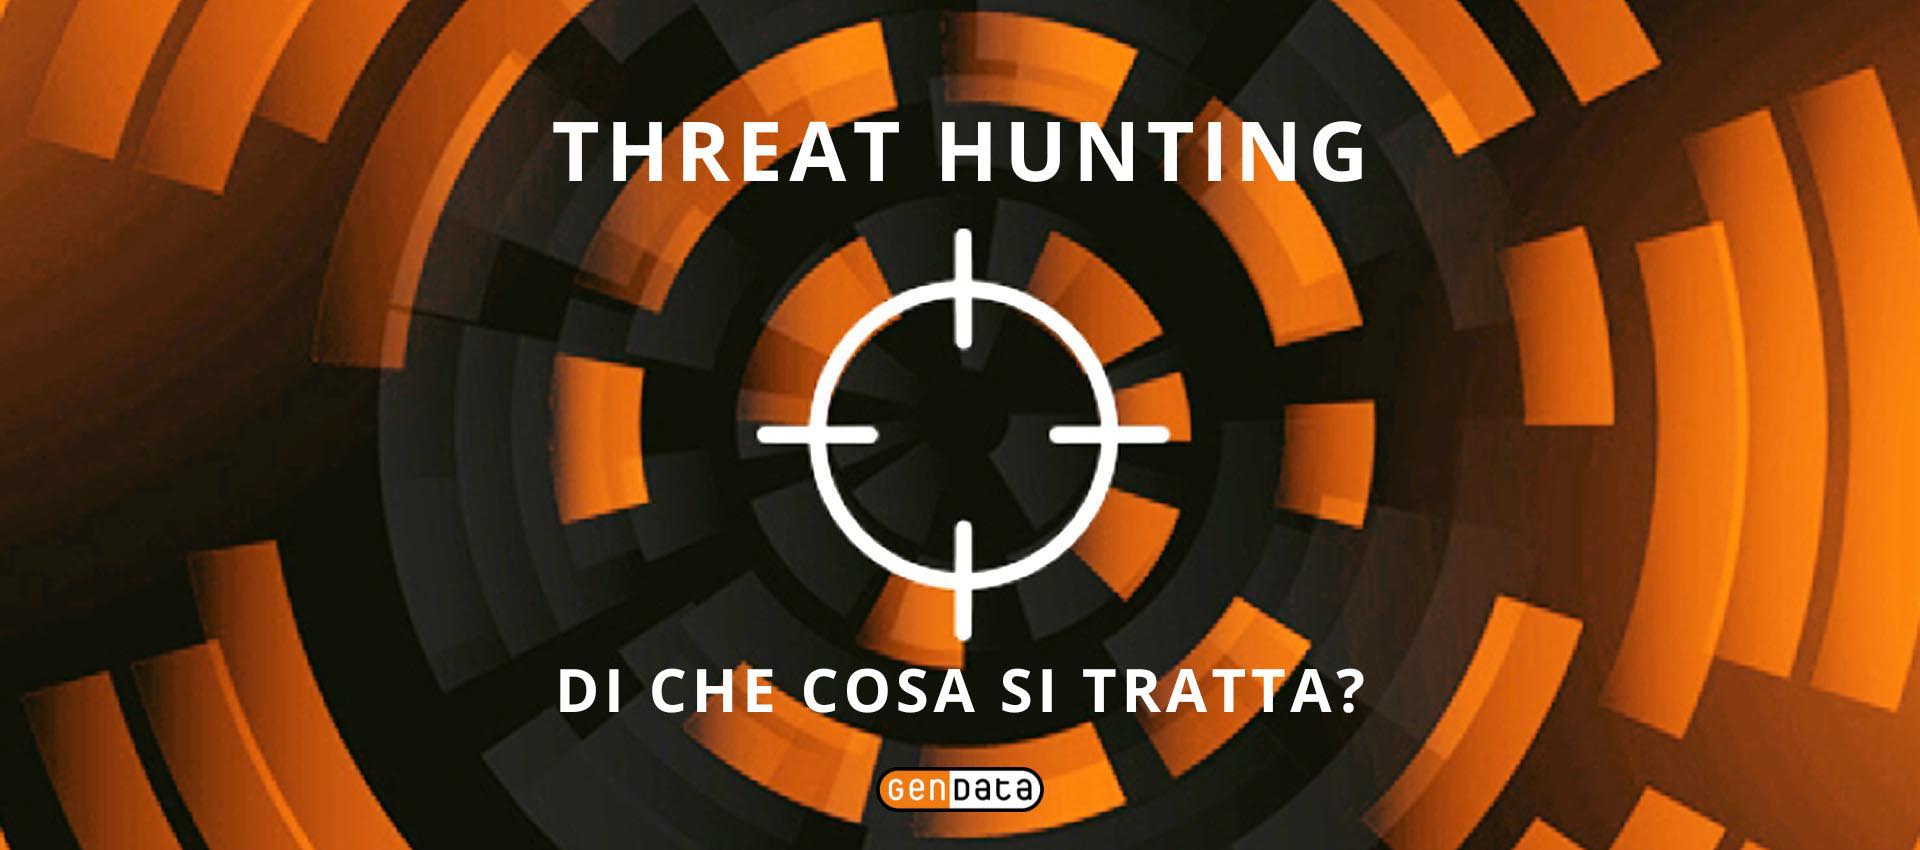 Threat Hunting: di che cosa si tratta?